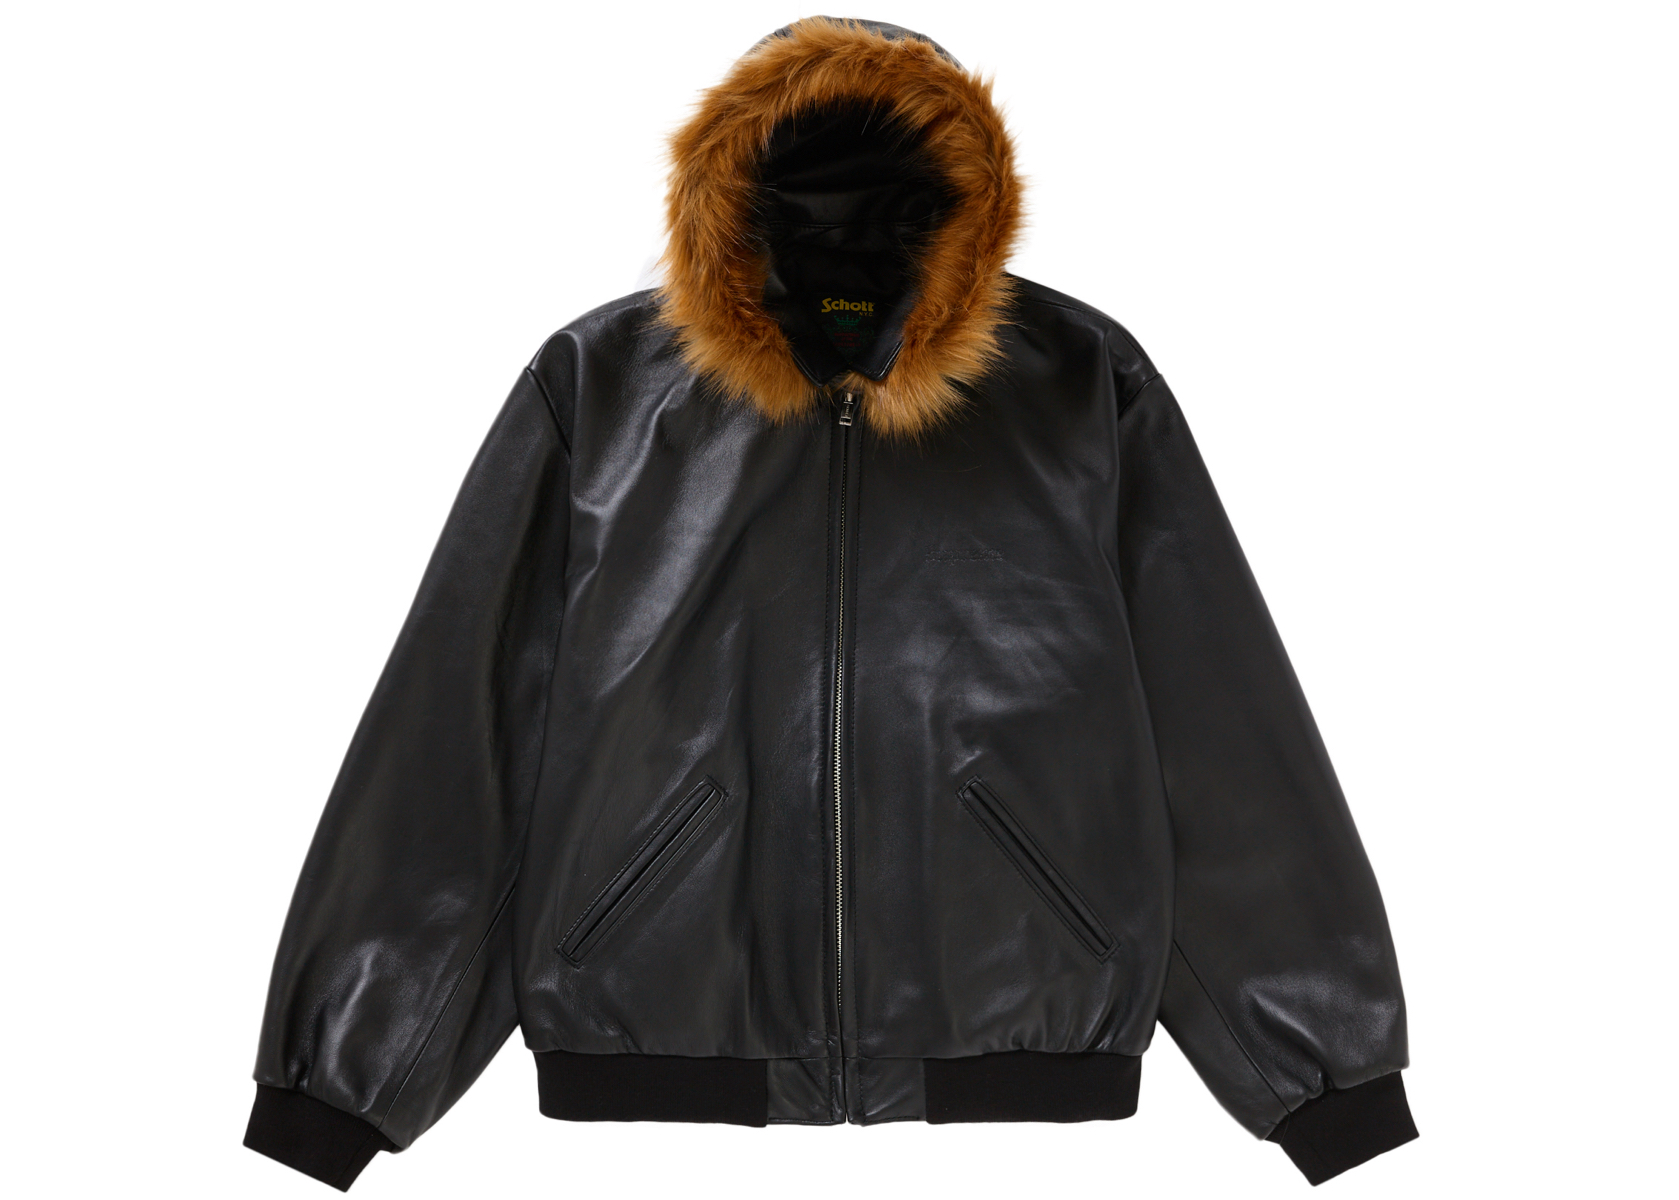 Supreme Schott Hooded Leather Bomber Jacket Black